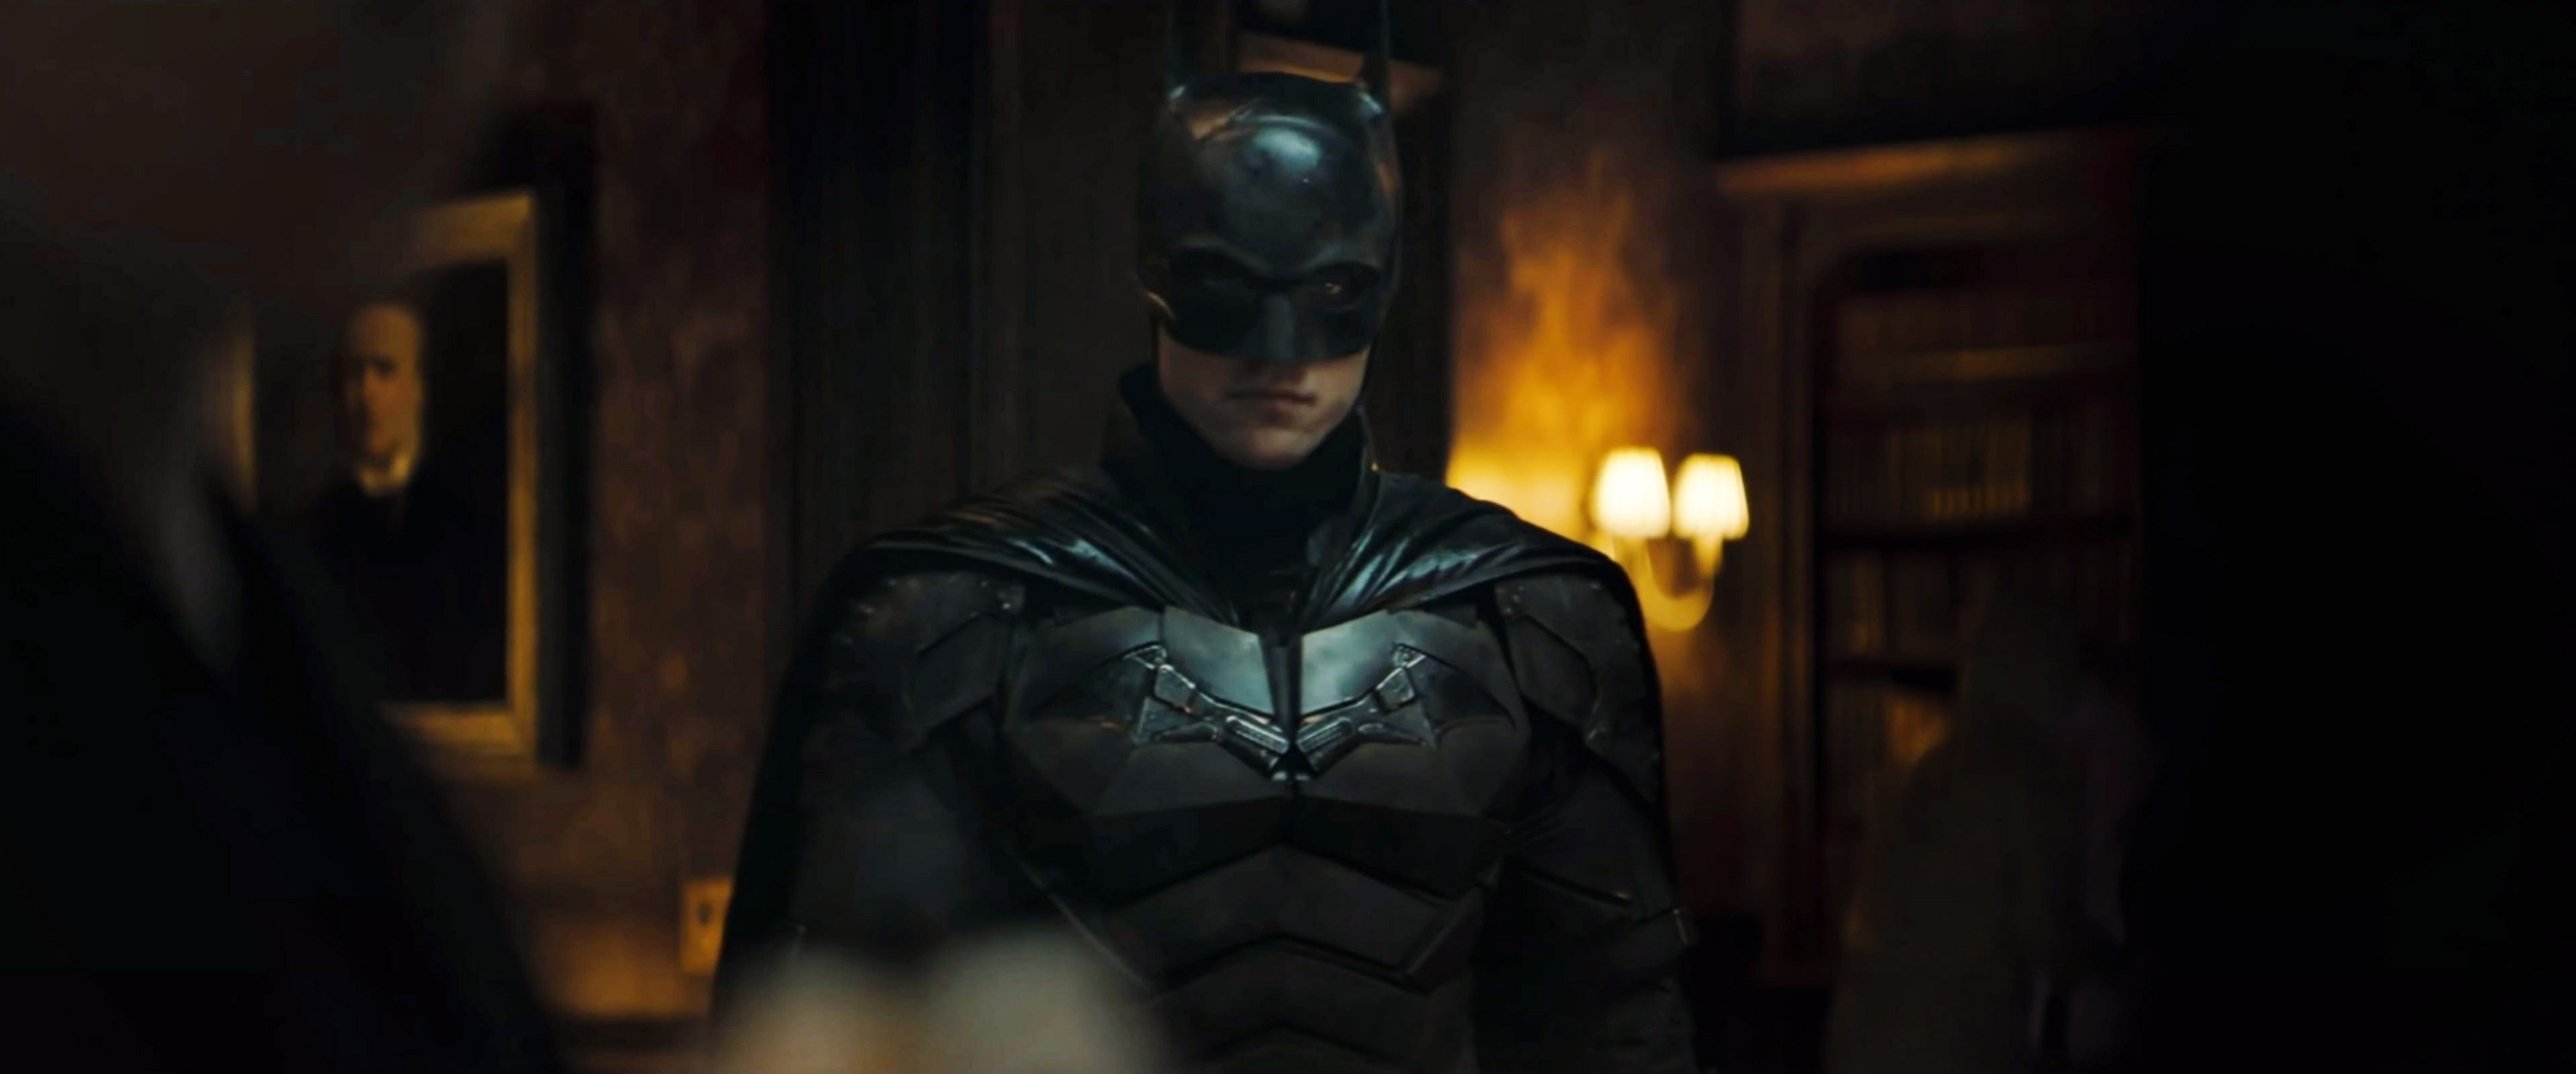 Robert in the Batman suit